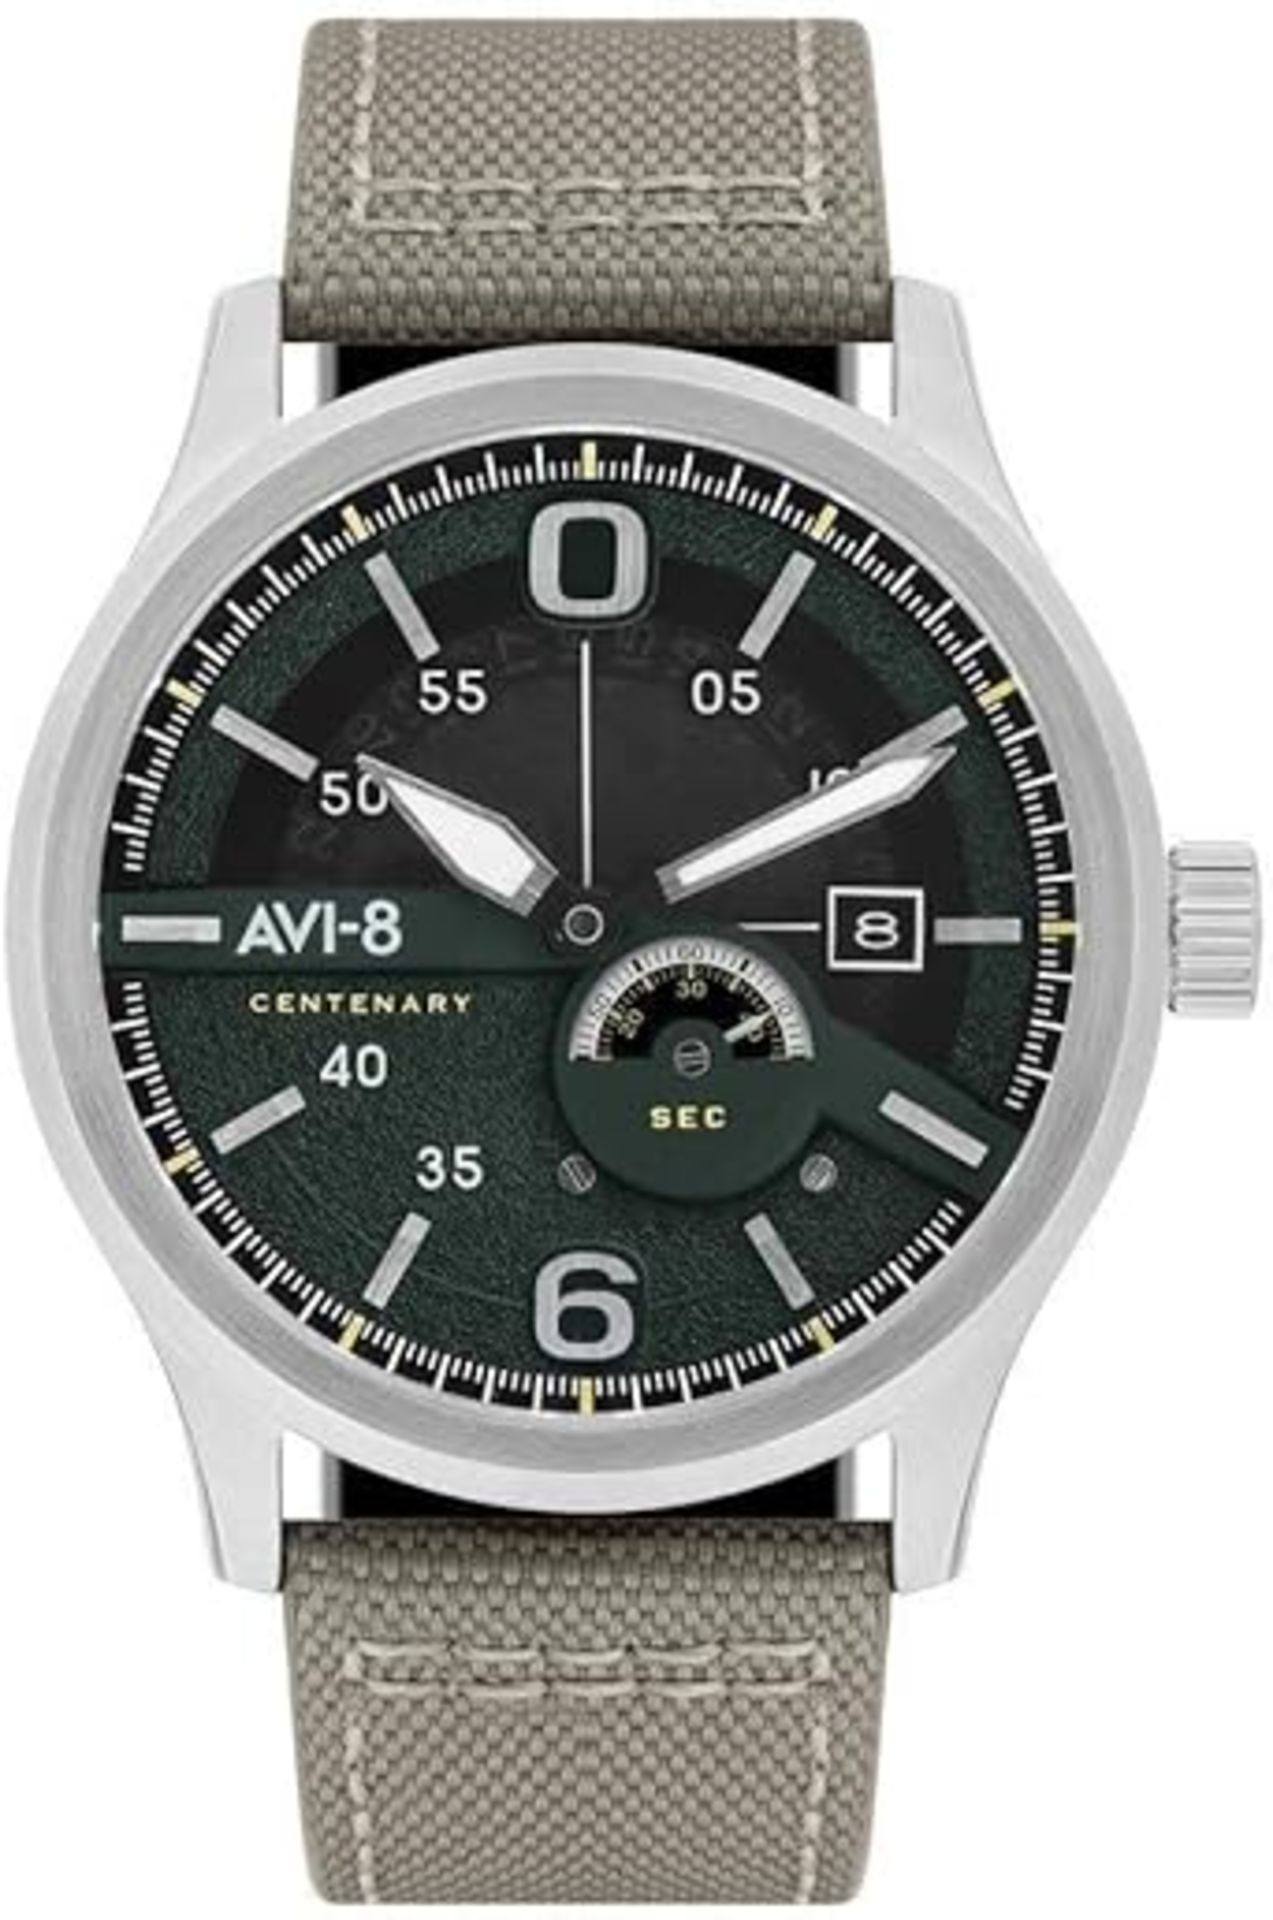 AVI-8 Men's Analog Japanese Quartz Watch with Leather Strap AV-4061-01 - Image 2 of 5